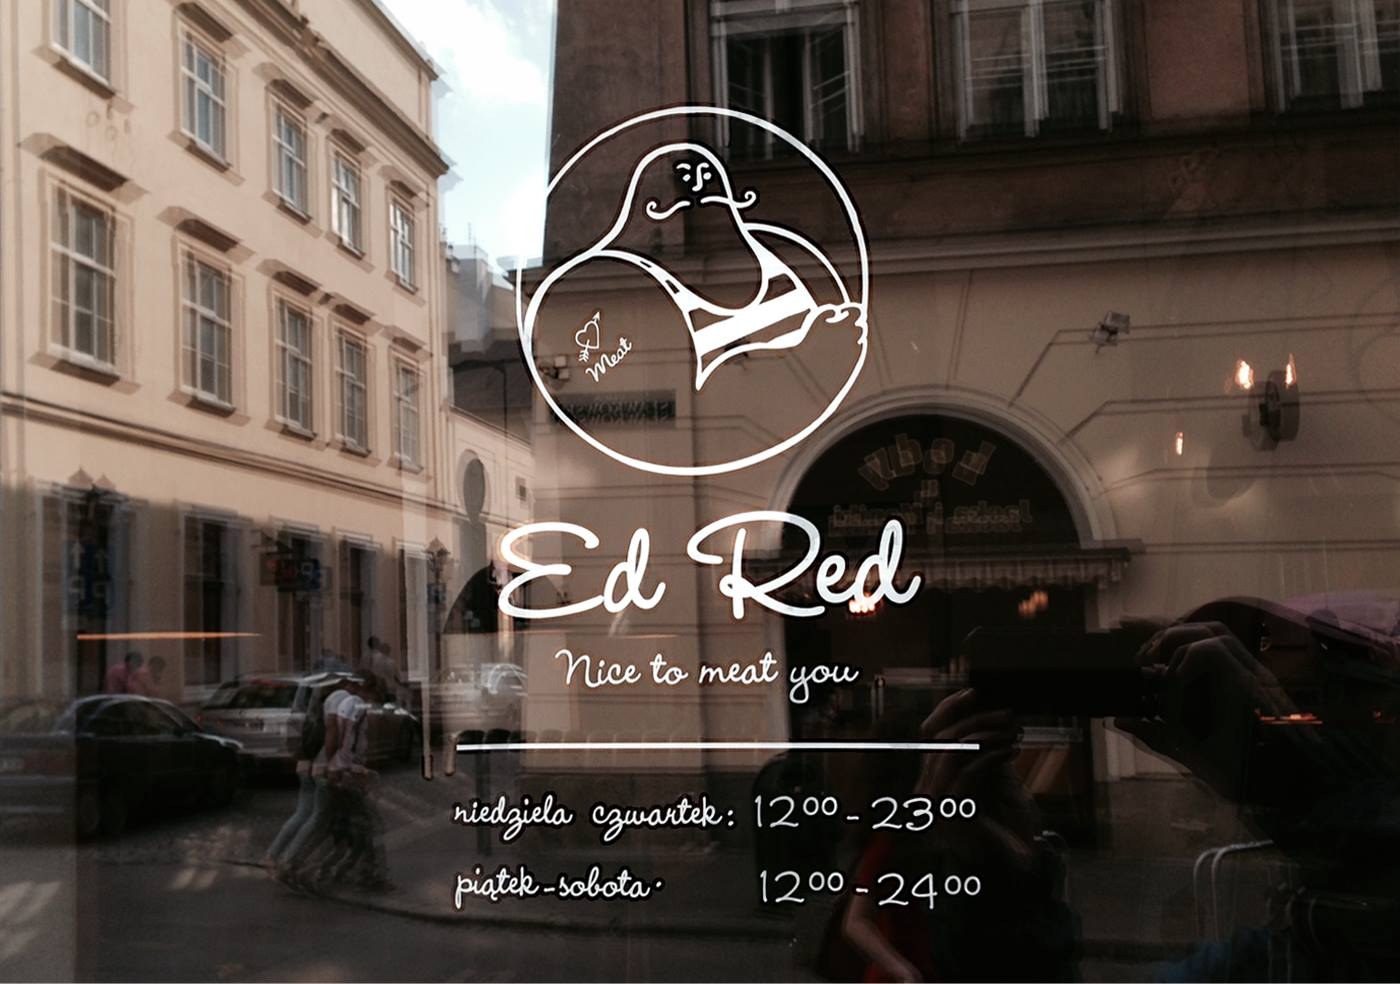 1a_ed_red_branding_restauracja_w_krakowie